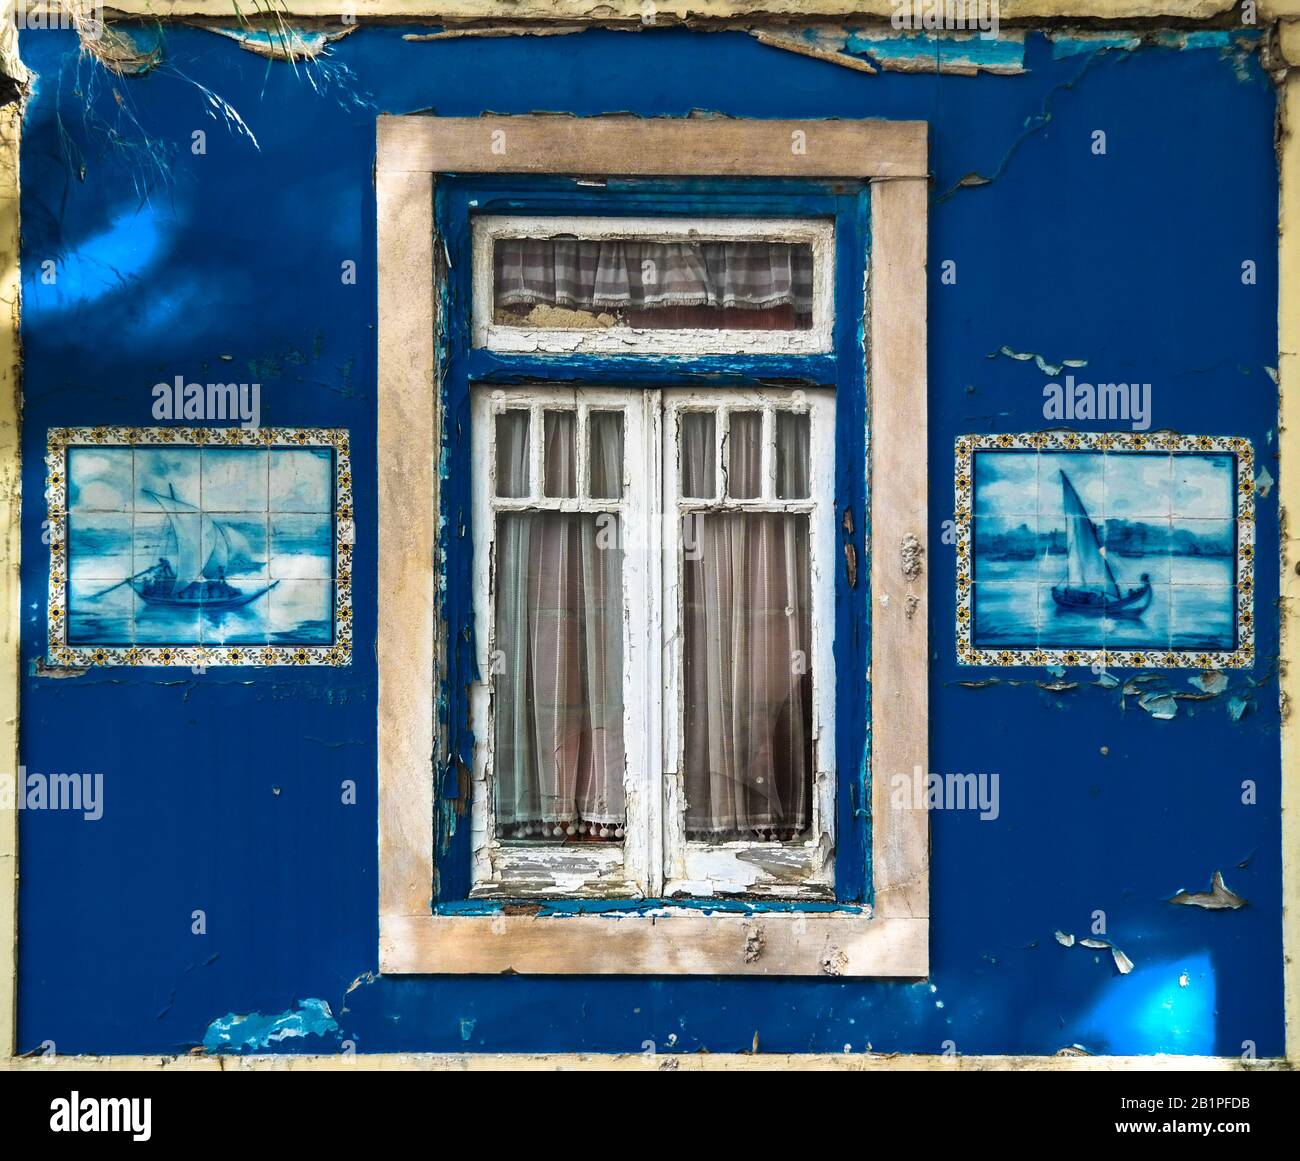 Lisbonne. Vieille fenêtre avec de belles photos de carreaux. PANTONE CLASSIC BLEU 19-4052 Banque D'Images